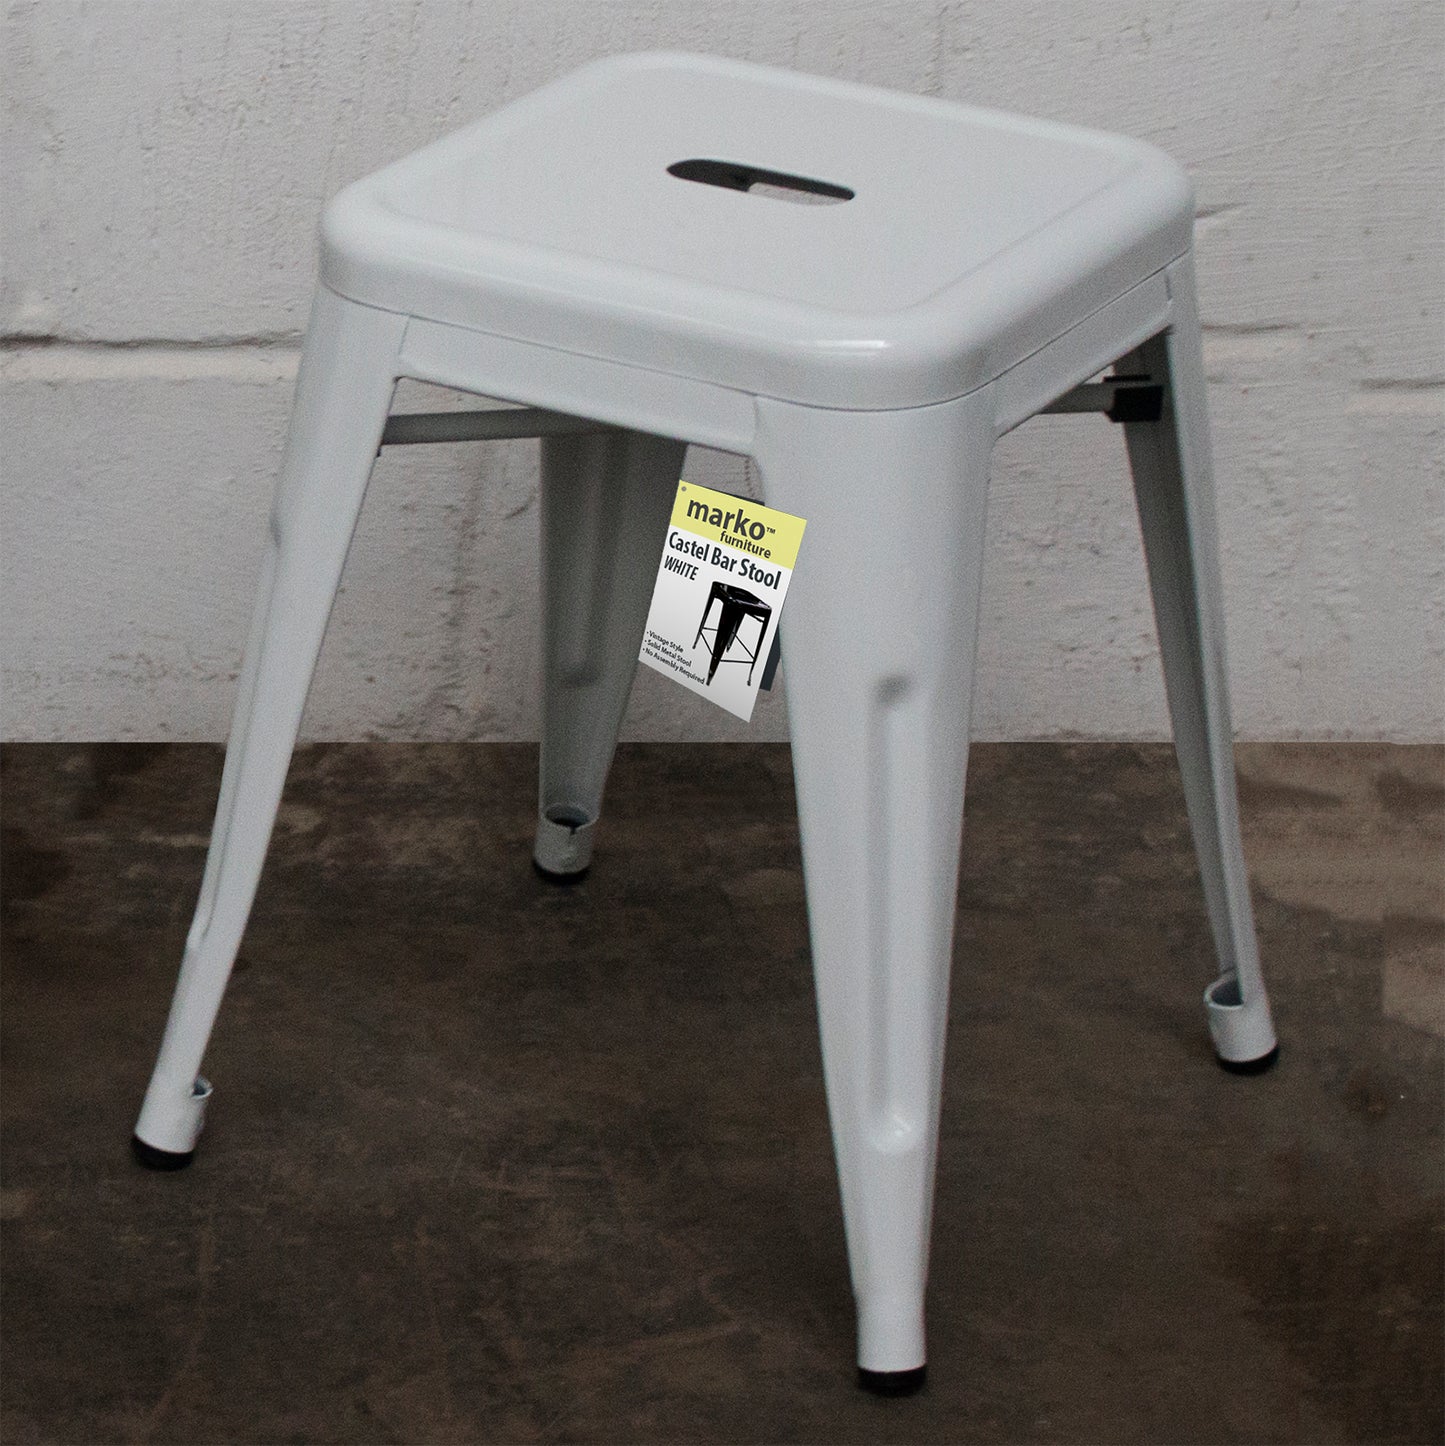 5PC Enna Table Siena Chair & Castel Stool Set - White